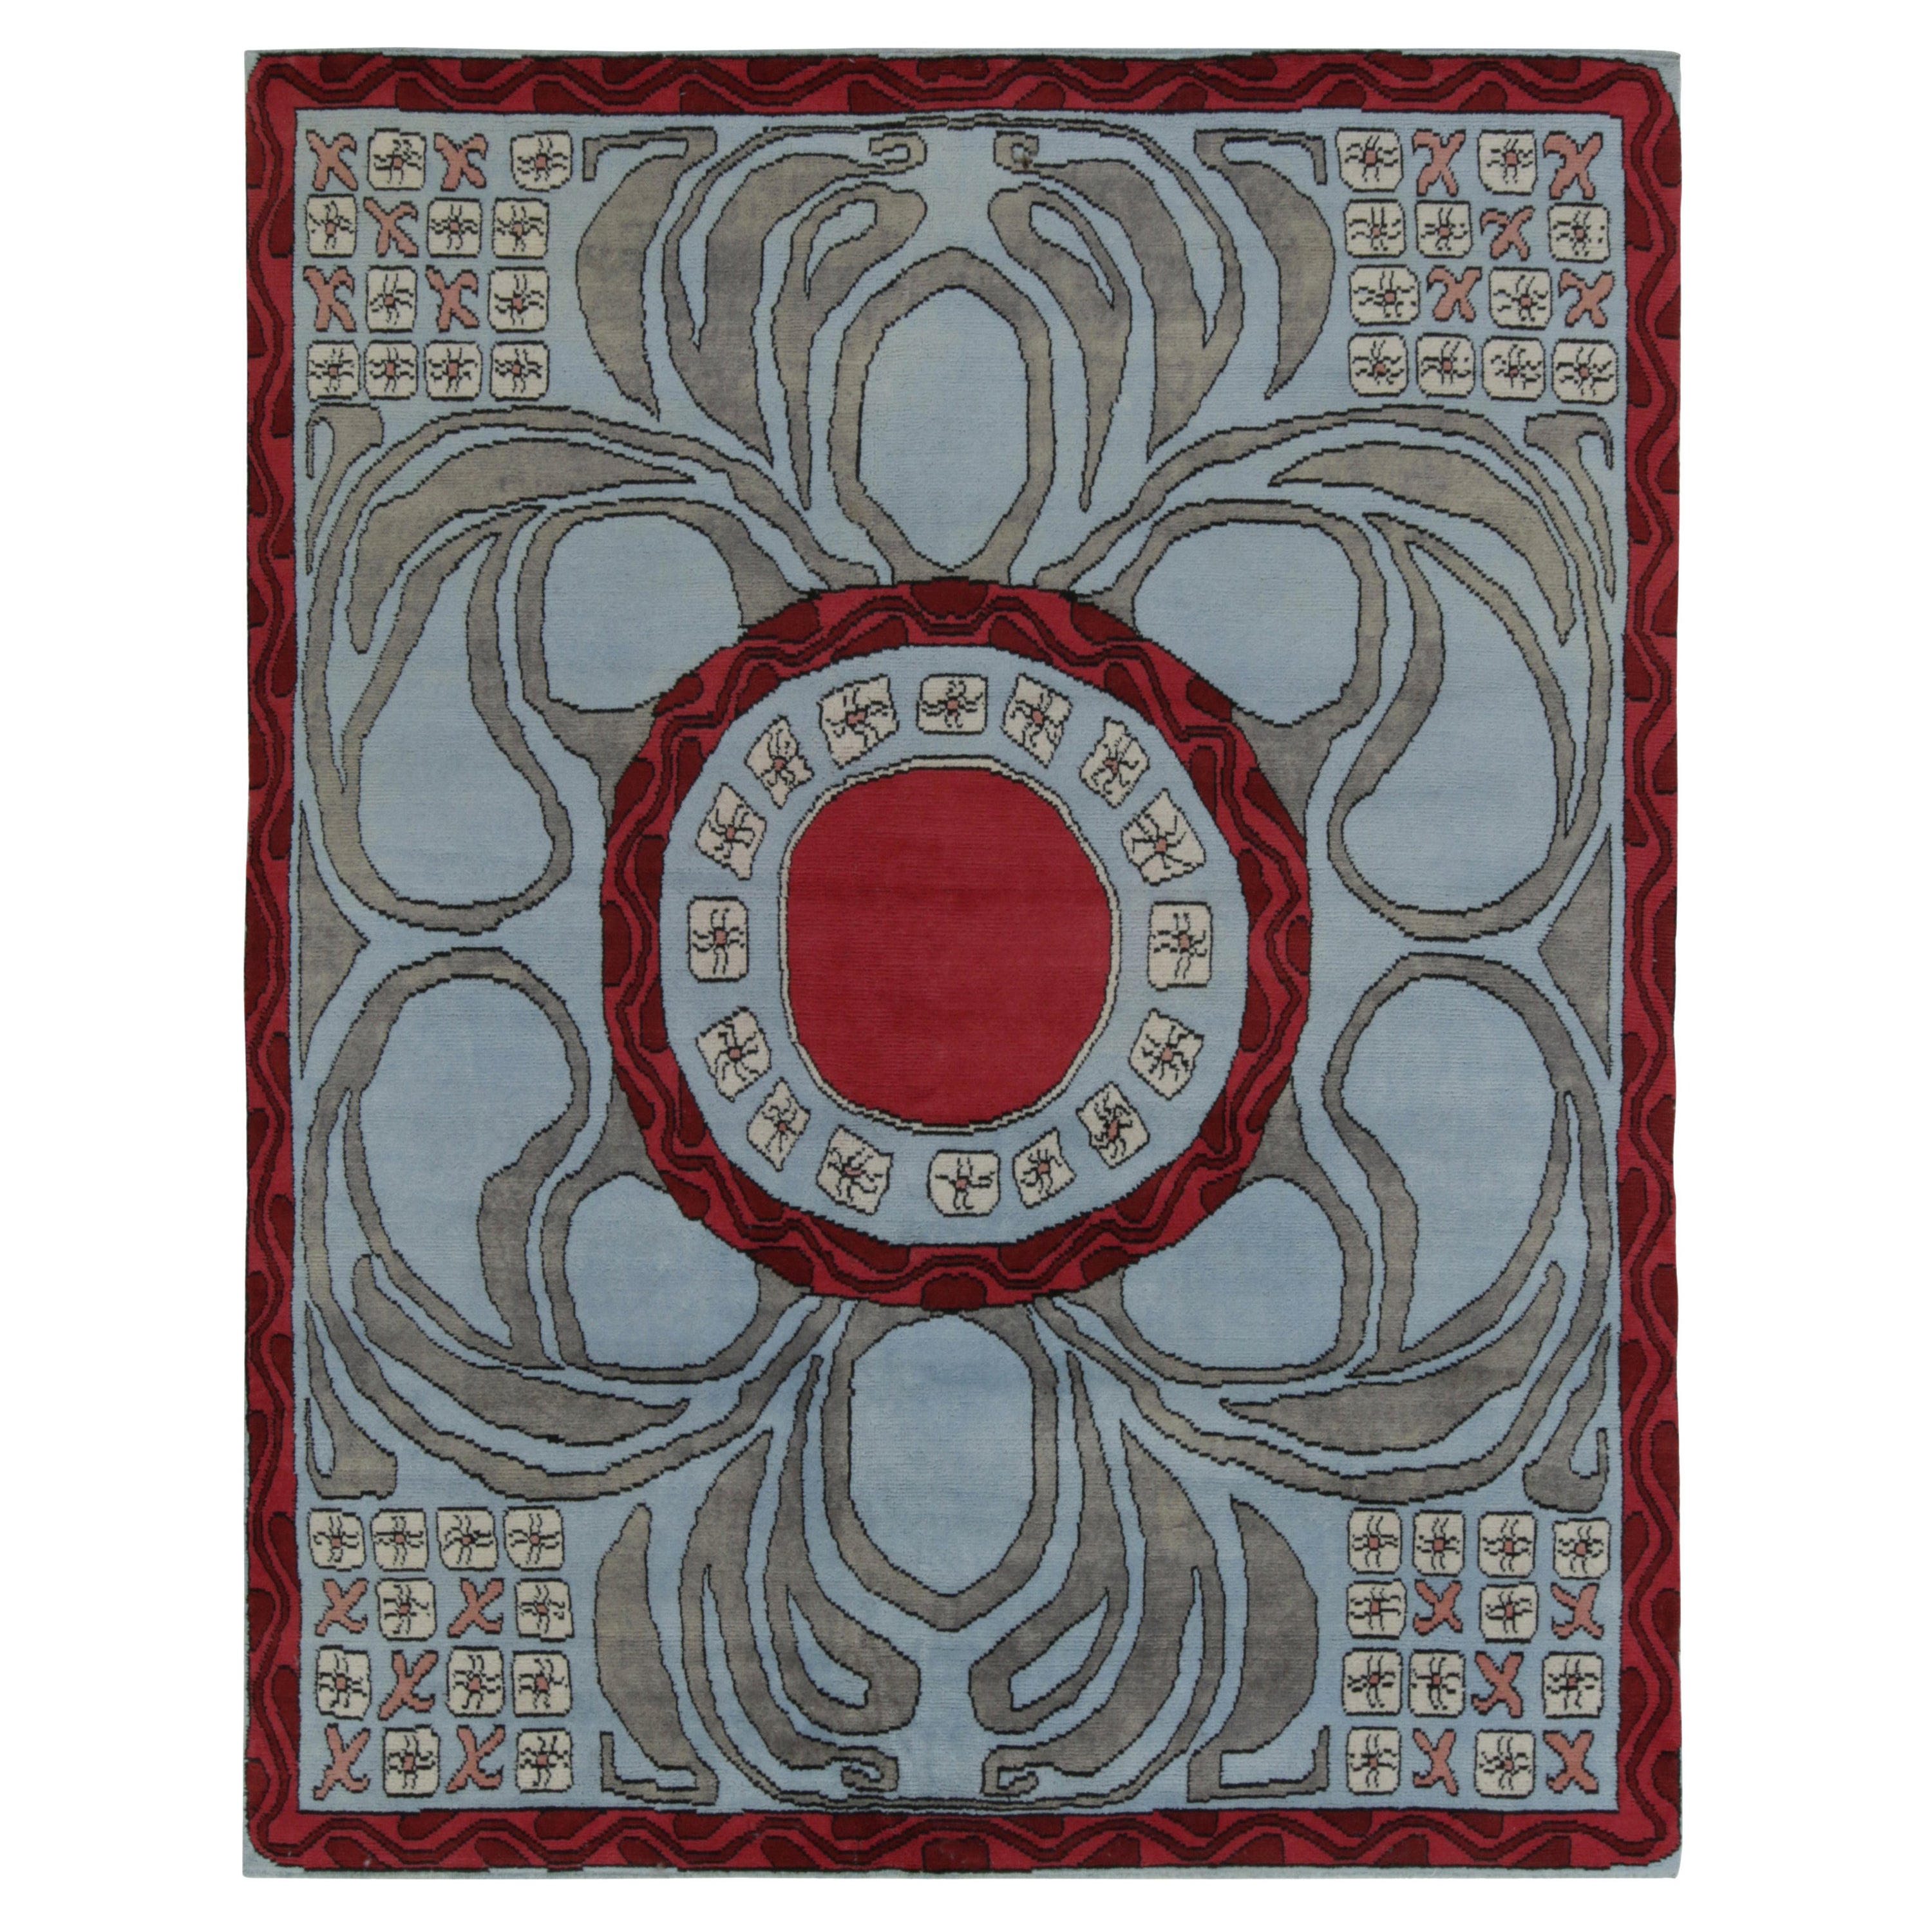 Rug & Kilim's French Art Deco Style Rug in Blue, Red and Gray Geometric Patterns (tapis français de style art déco à motifs géométriques bleus, rouges et gris)